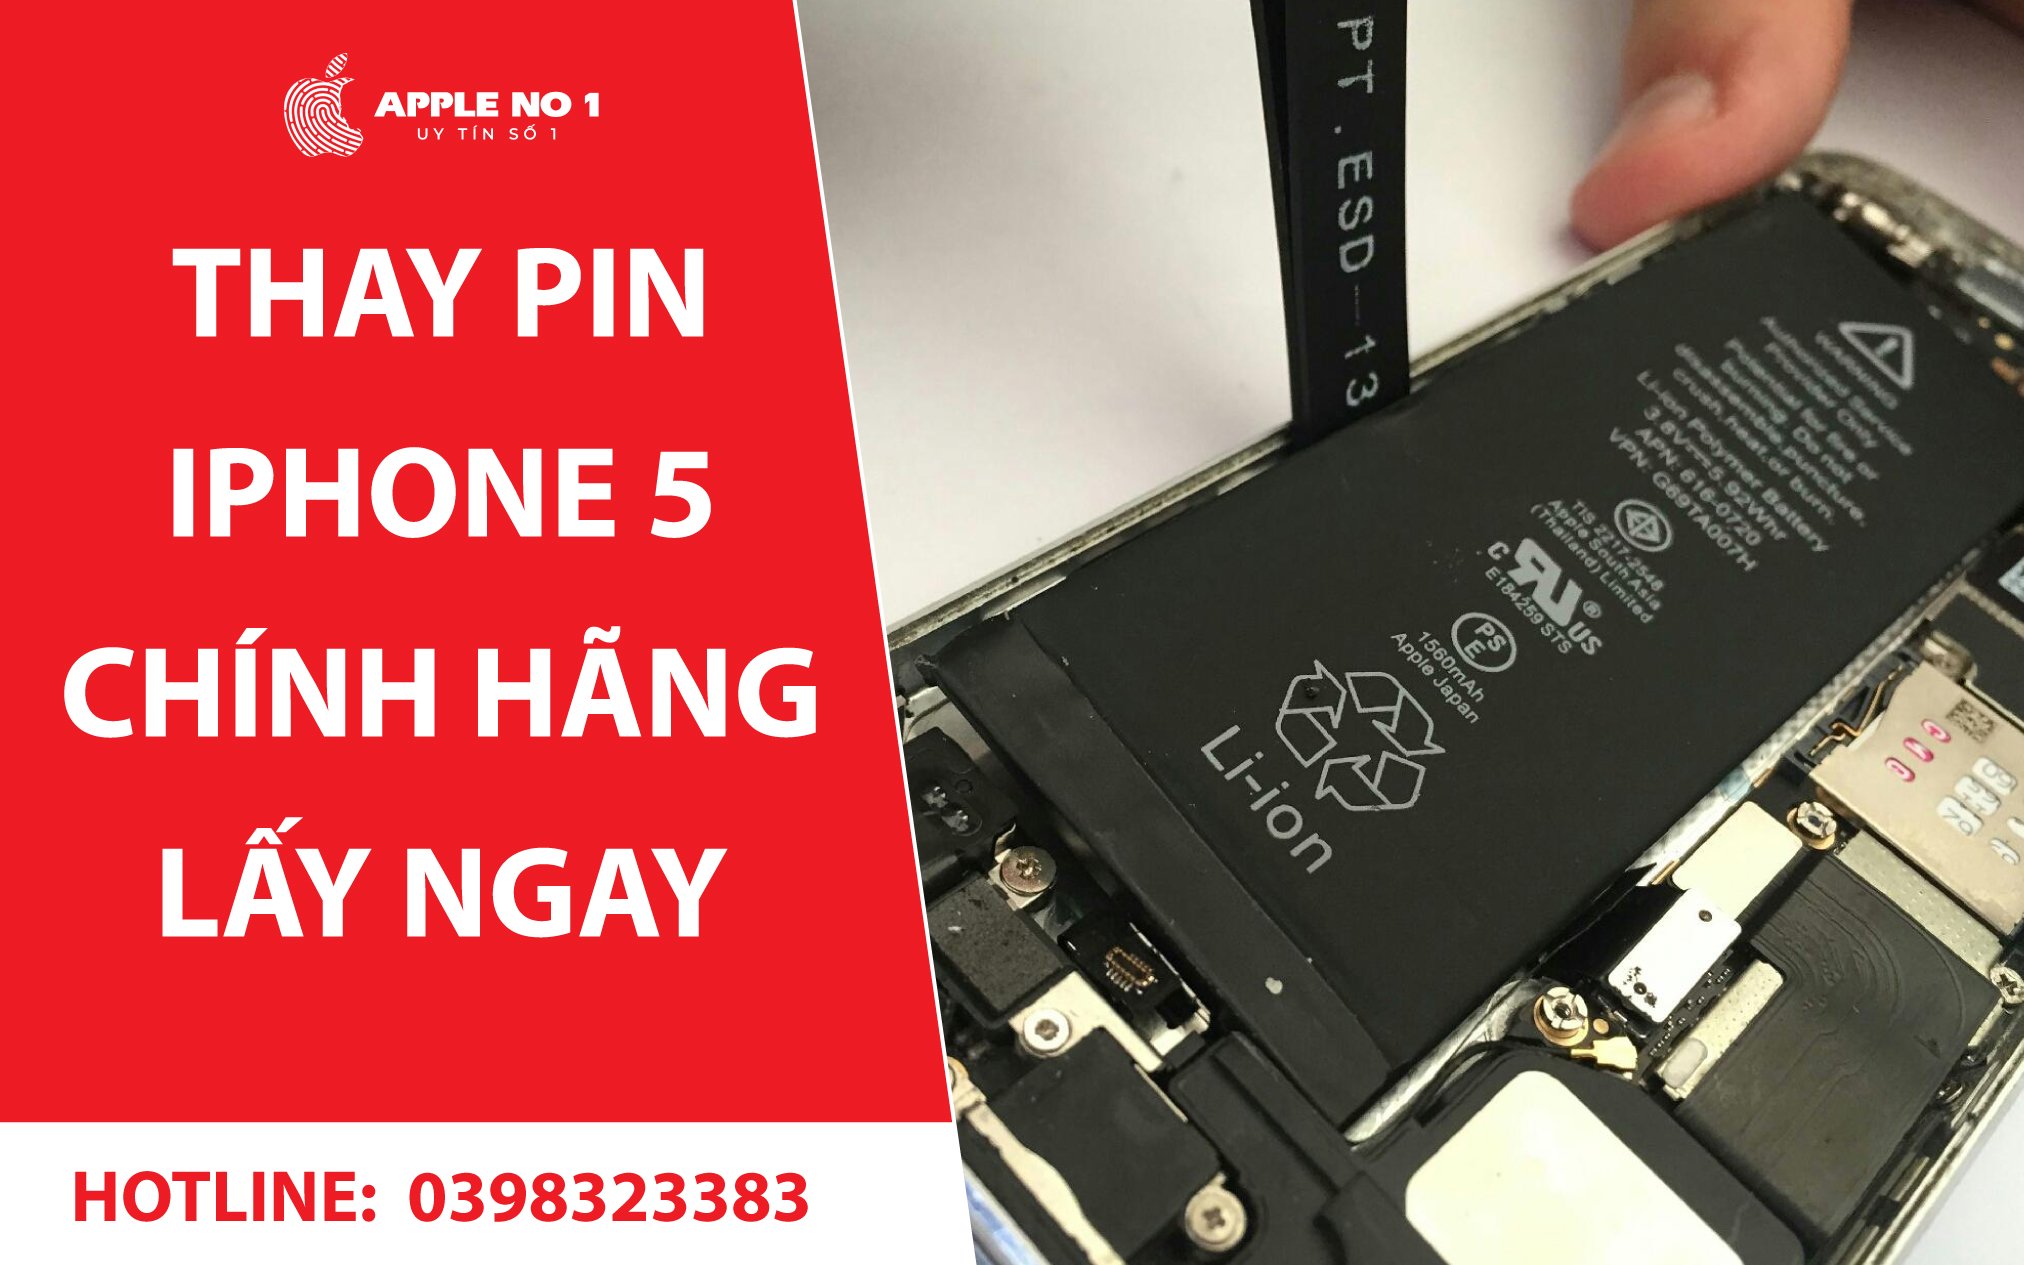 Thay pin iPhone 5 dung luong chuan chinh hang uy tin tai Apple No.1